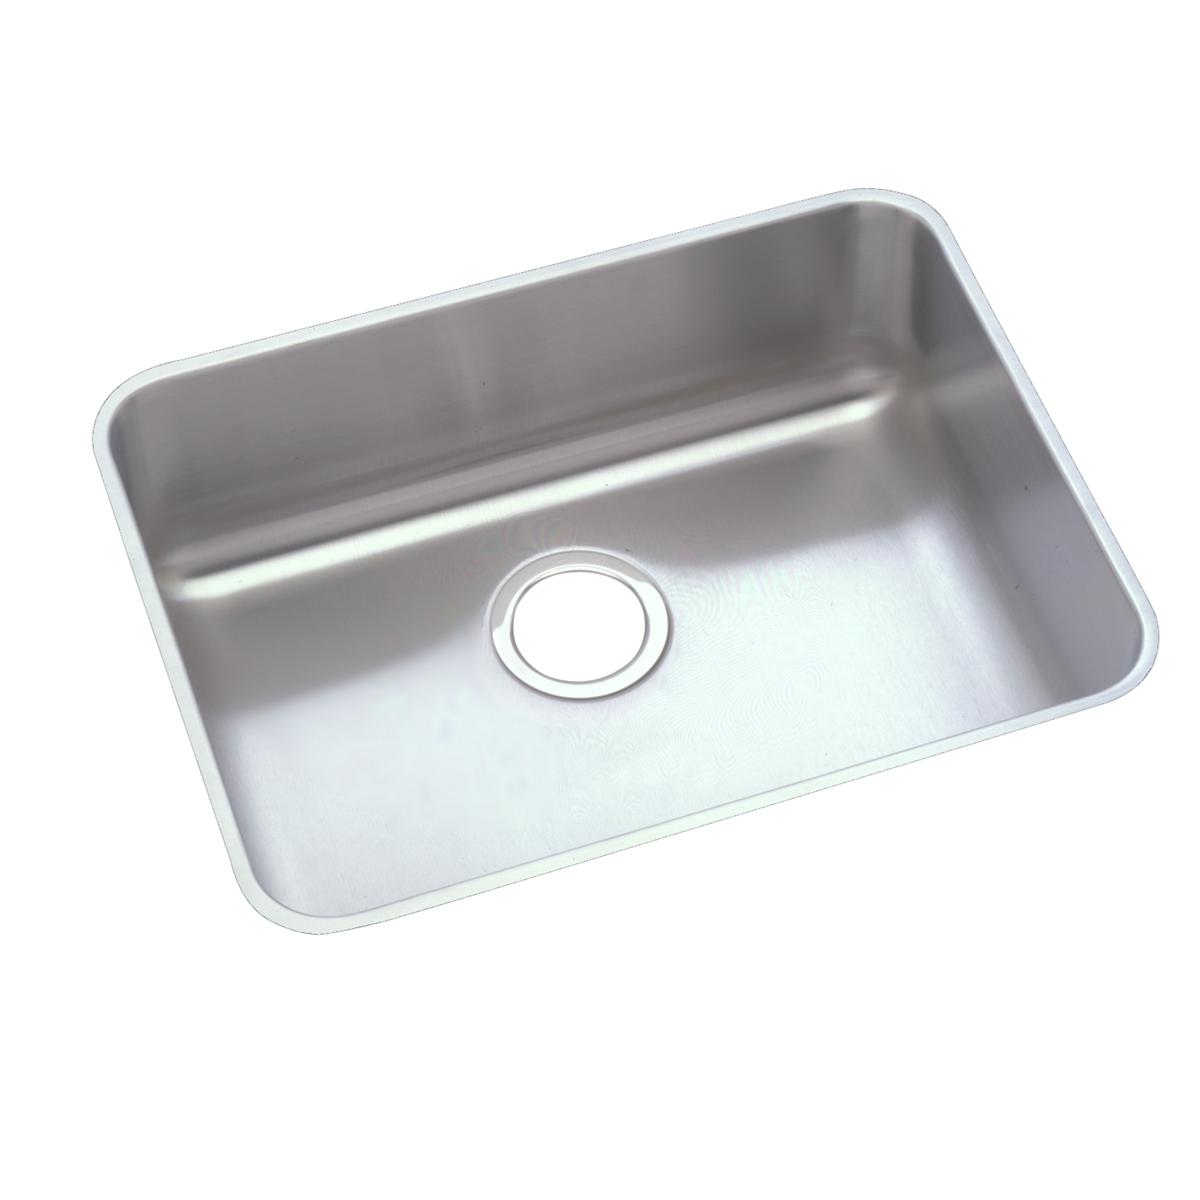 Elkay Stainless Steel Single Bowl Undermount Sink 1469364